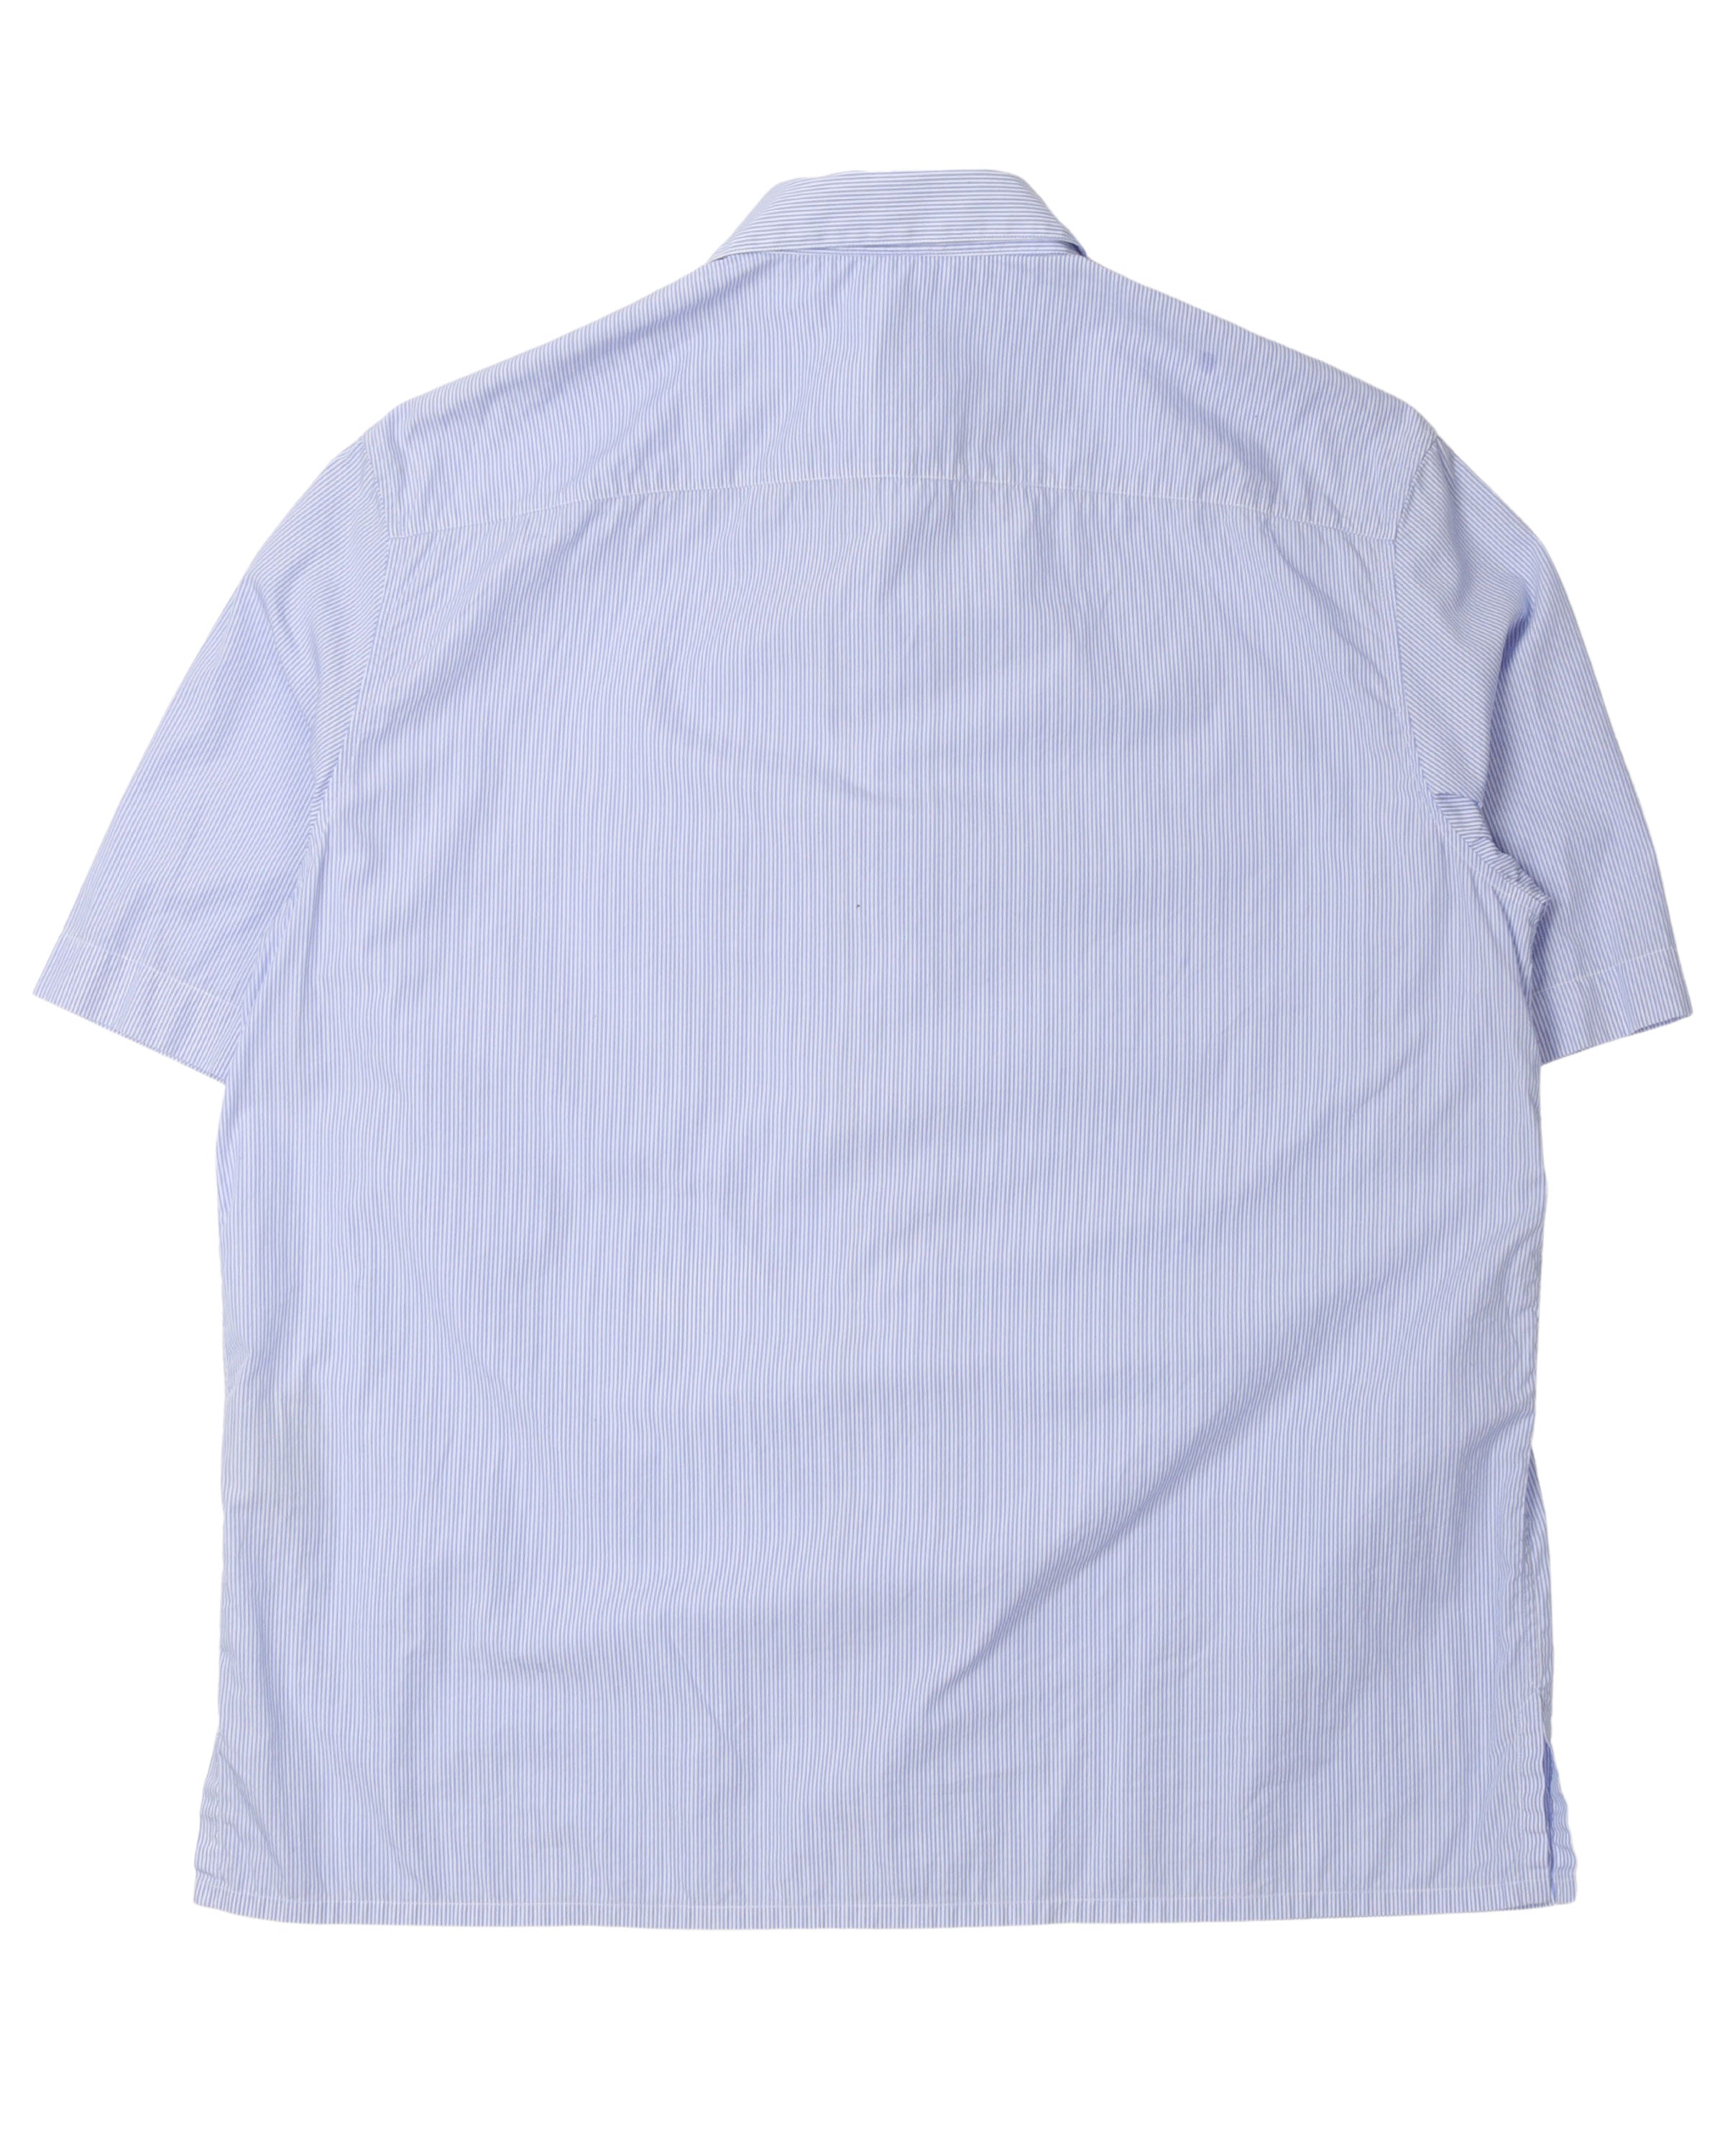 Air Dior Pinstripe Short Sleeve Shirt